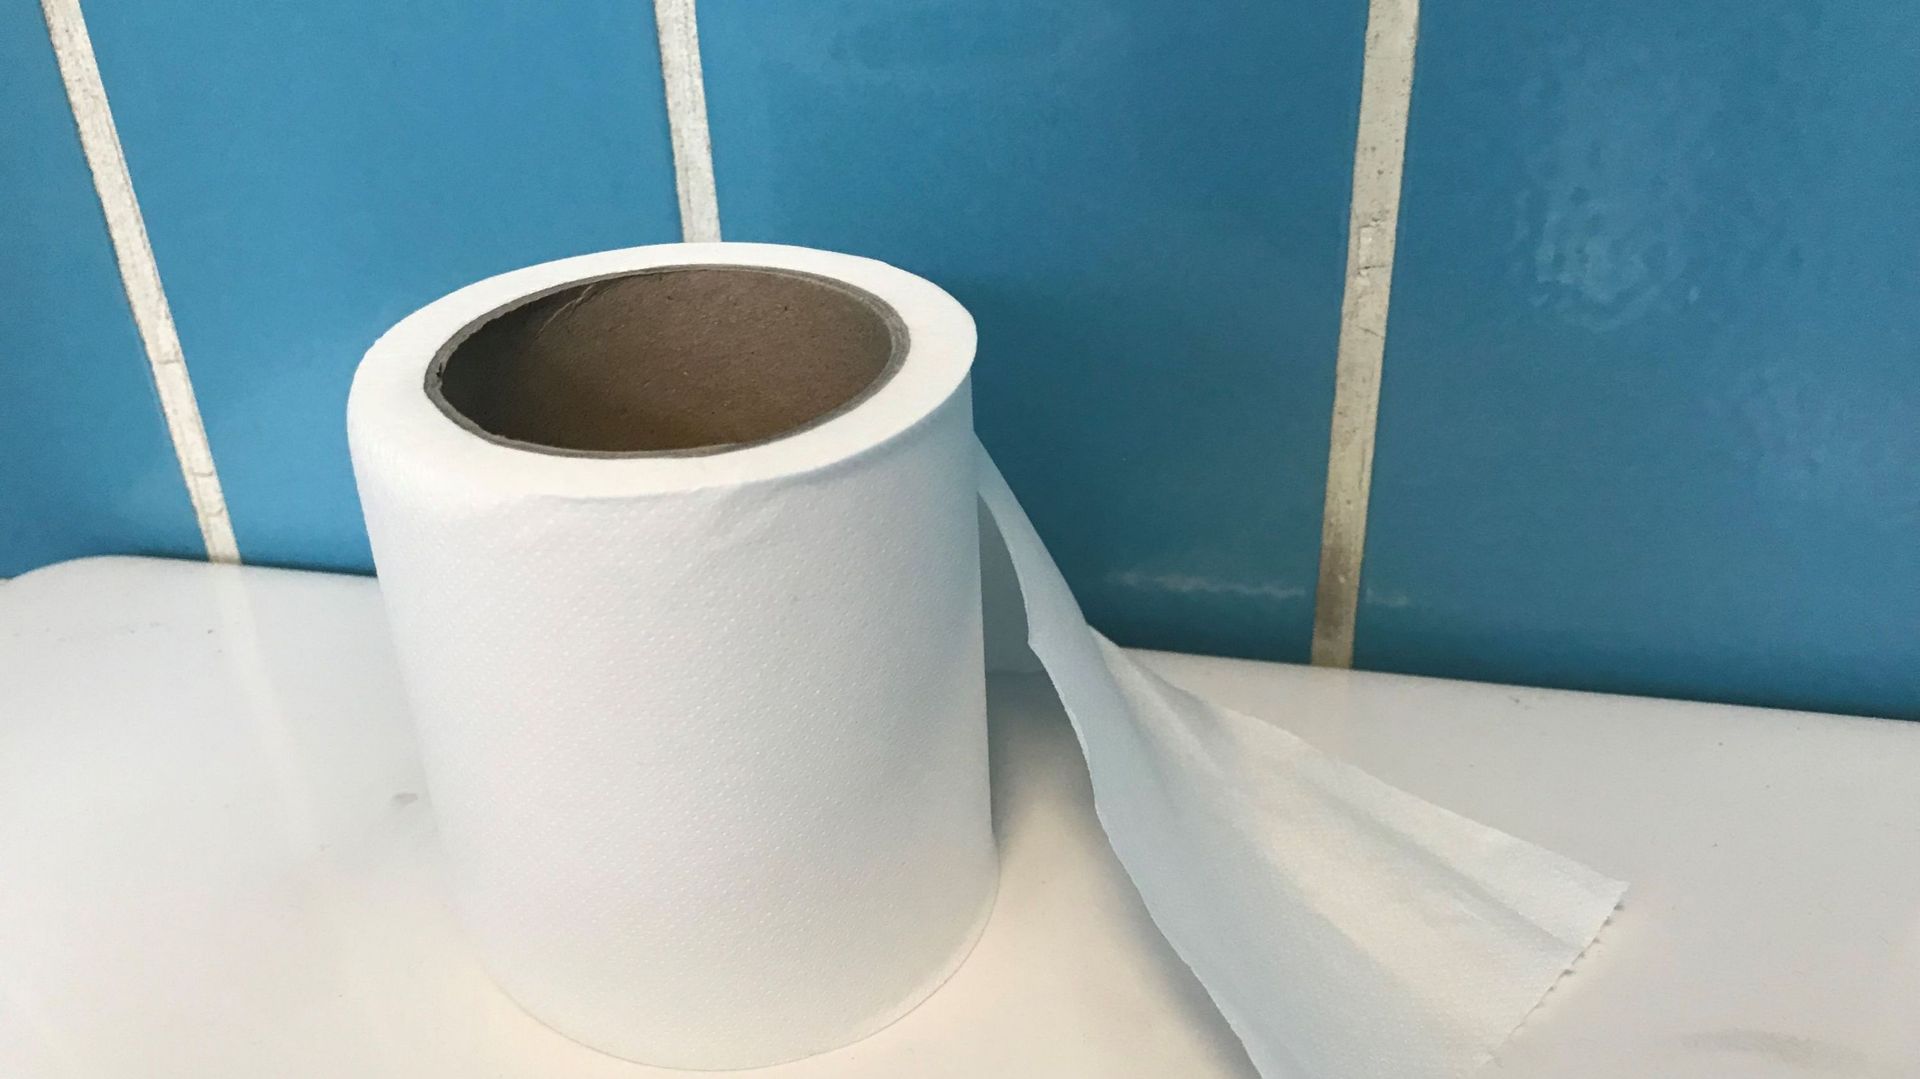 Le papier toilette participe à la déforestation